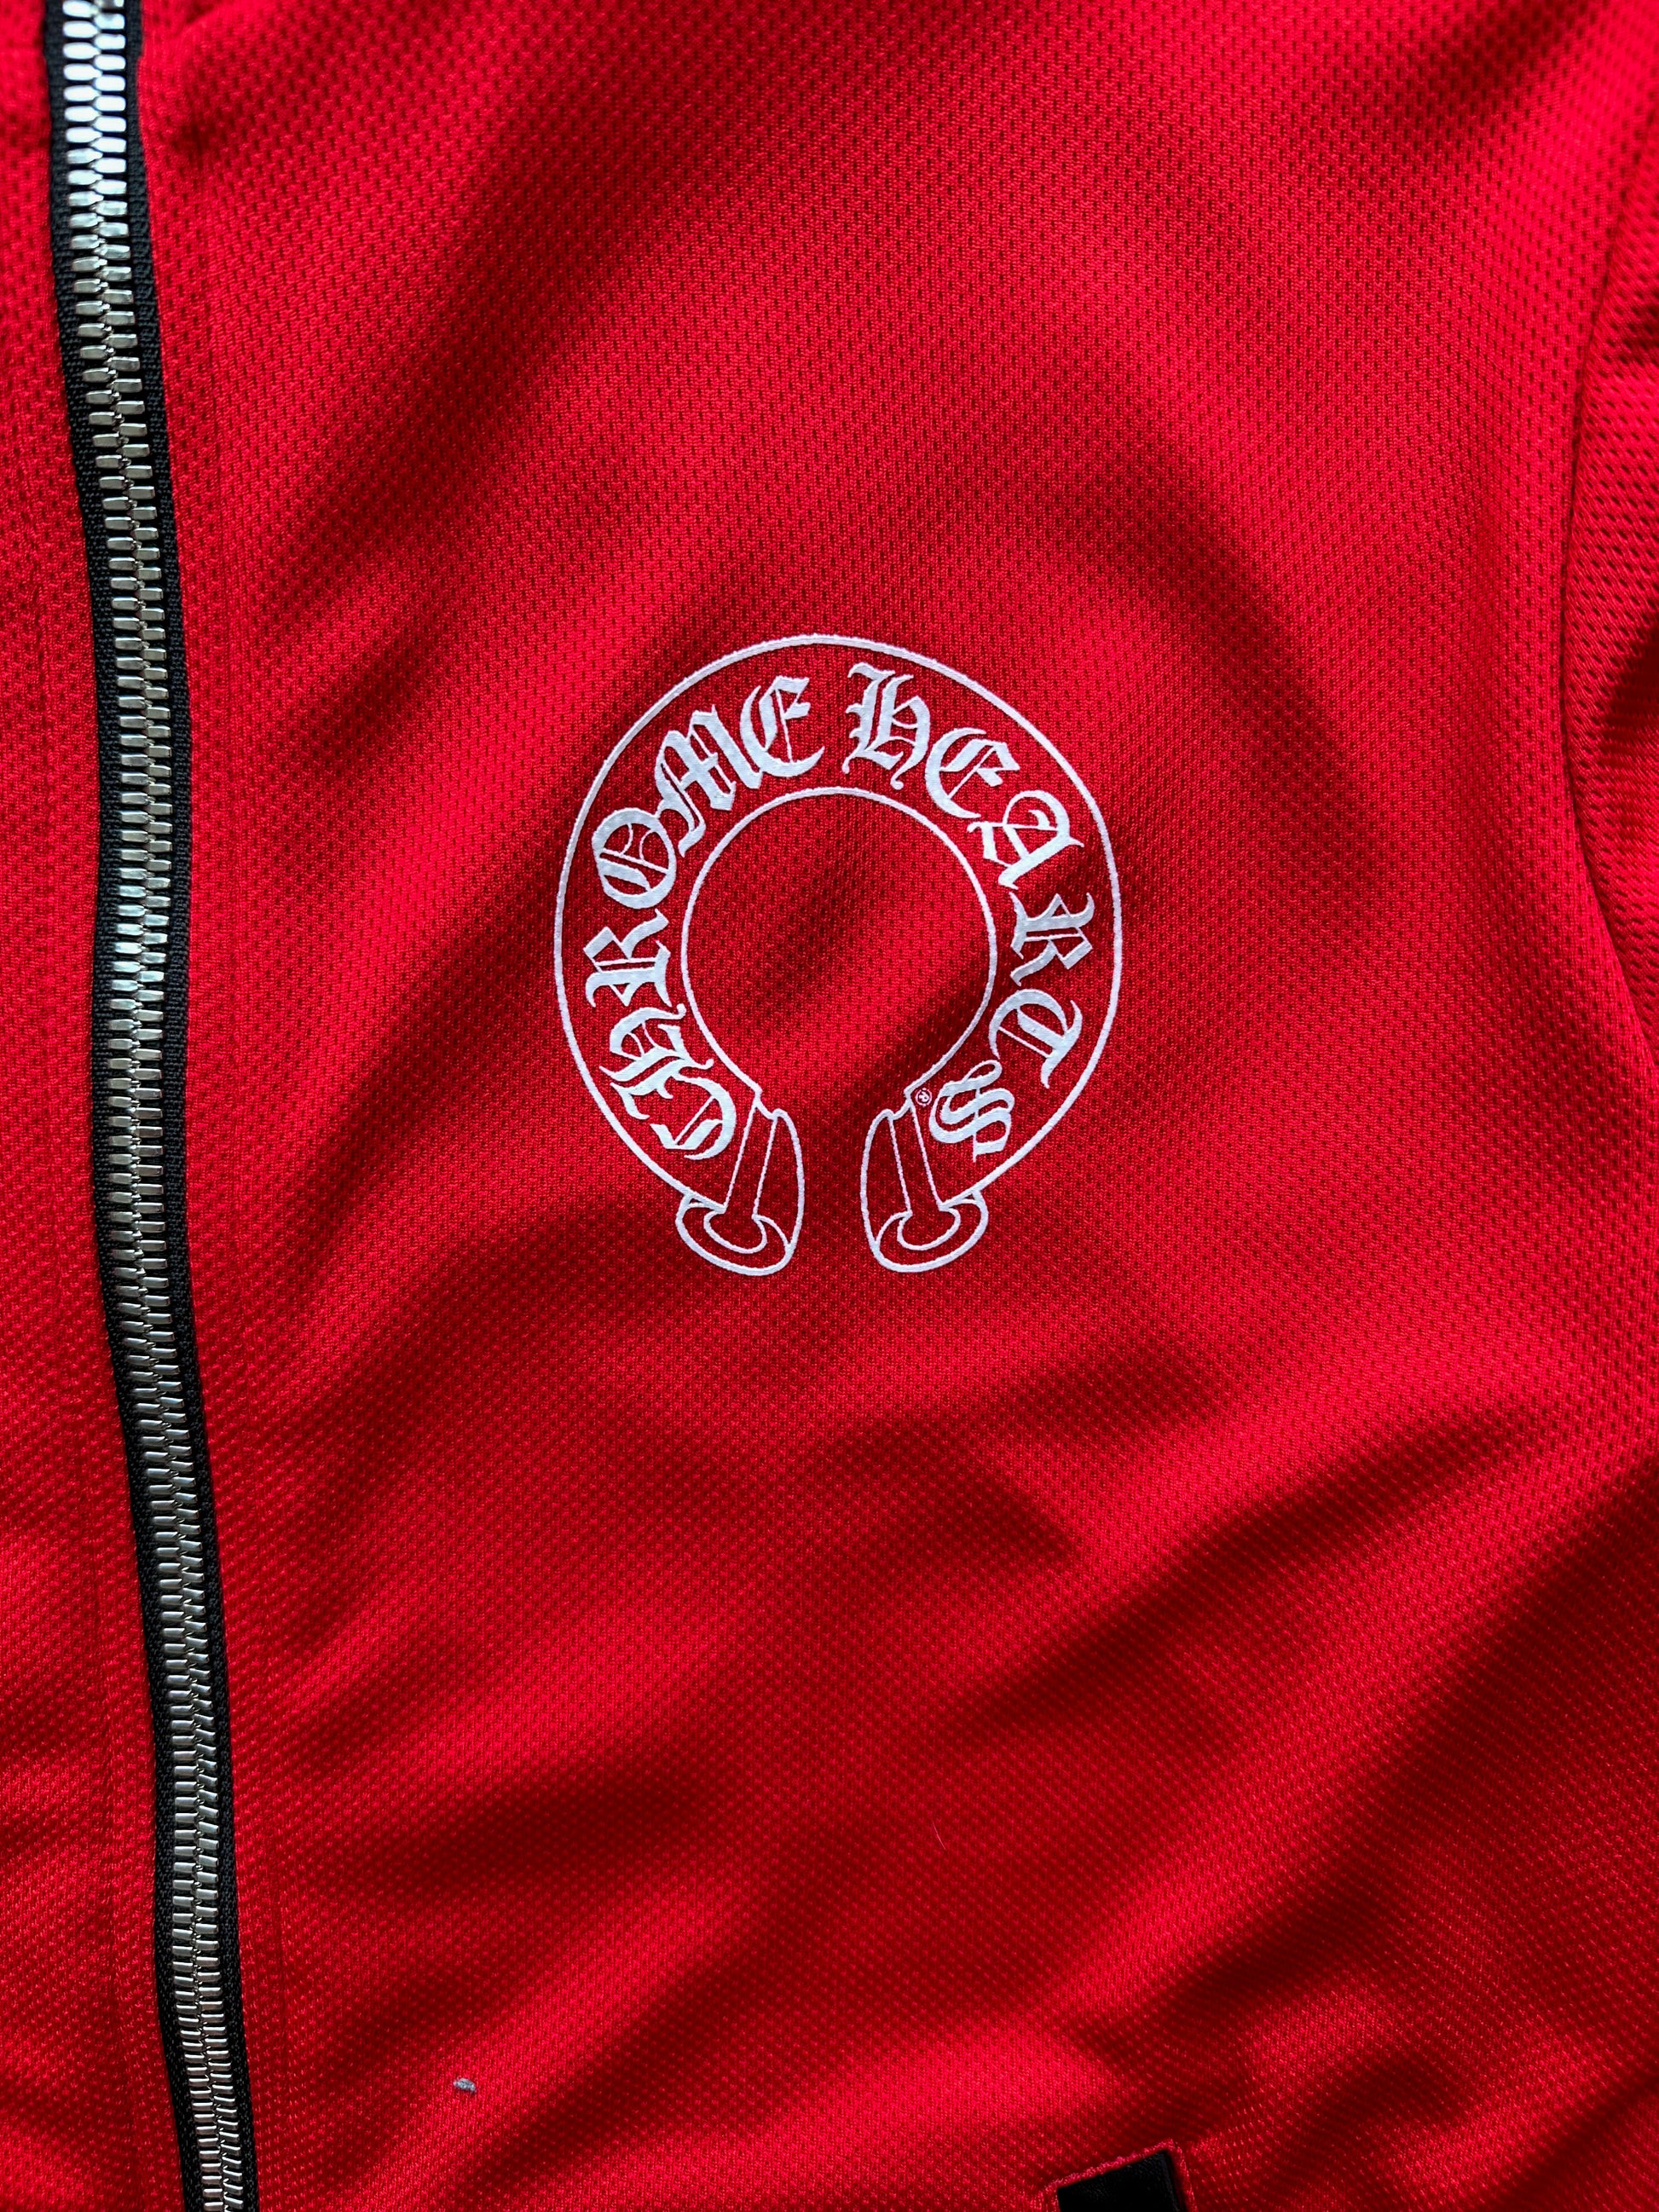 Chrome Hearts White Horseshoe Logo Track Jacket